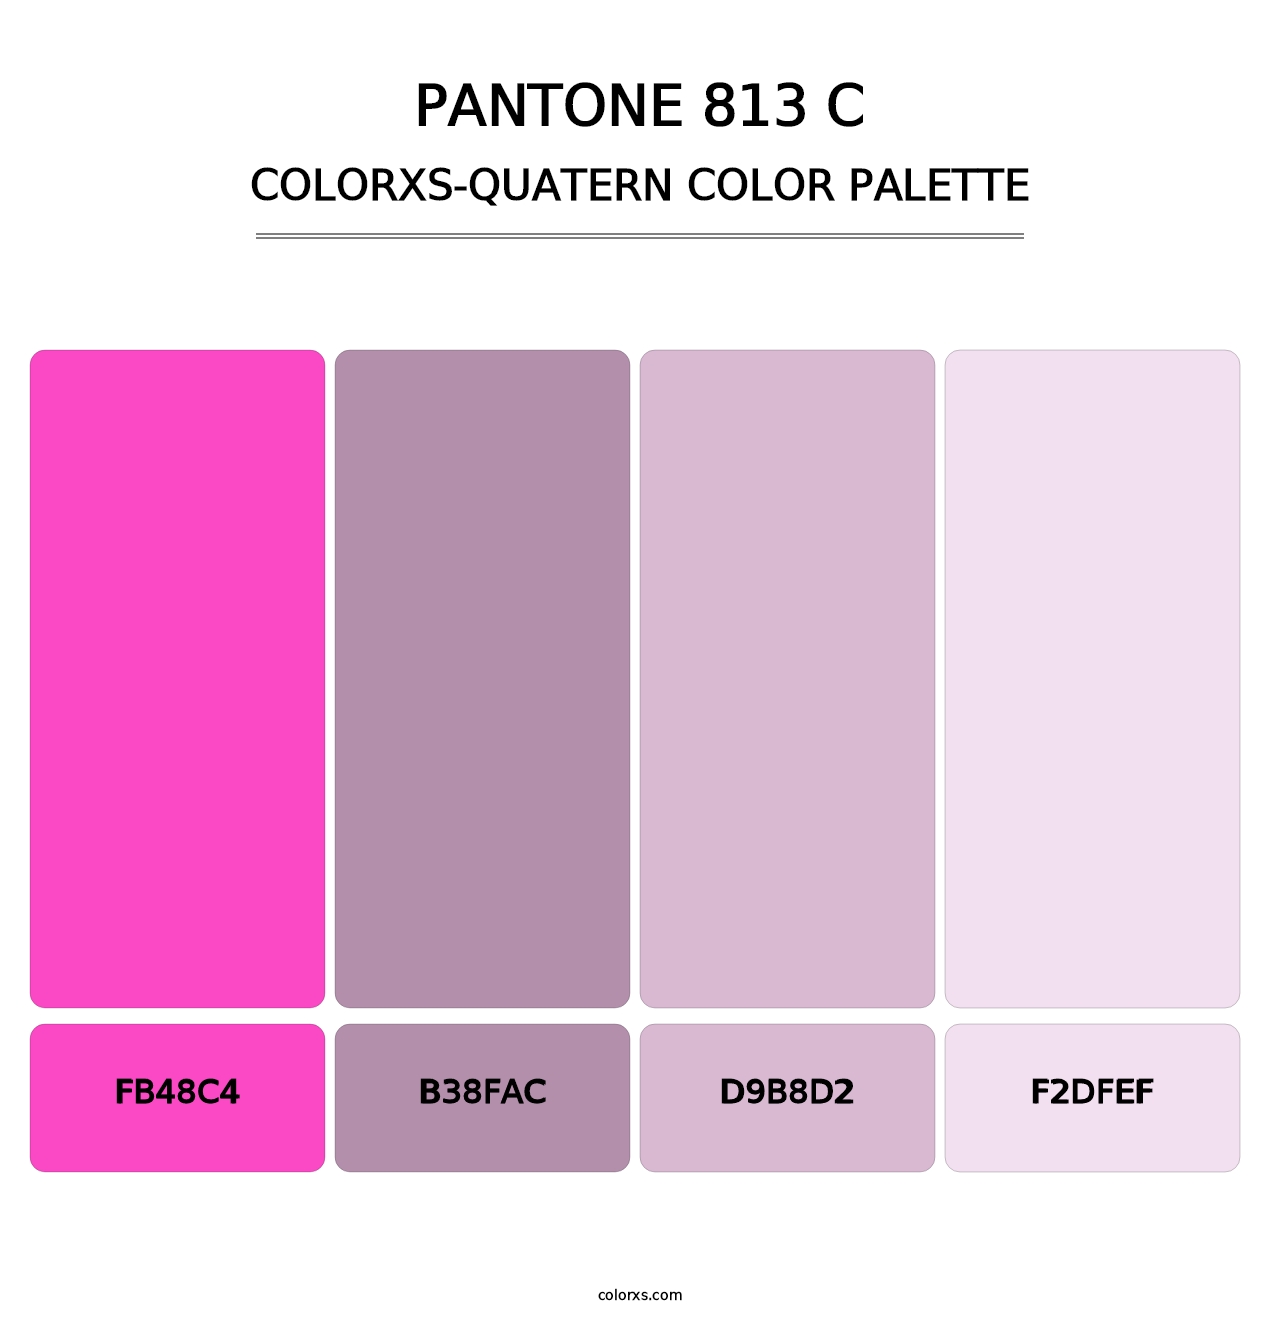 PANTONE 813 C - Colorxs Quatern Palette